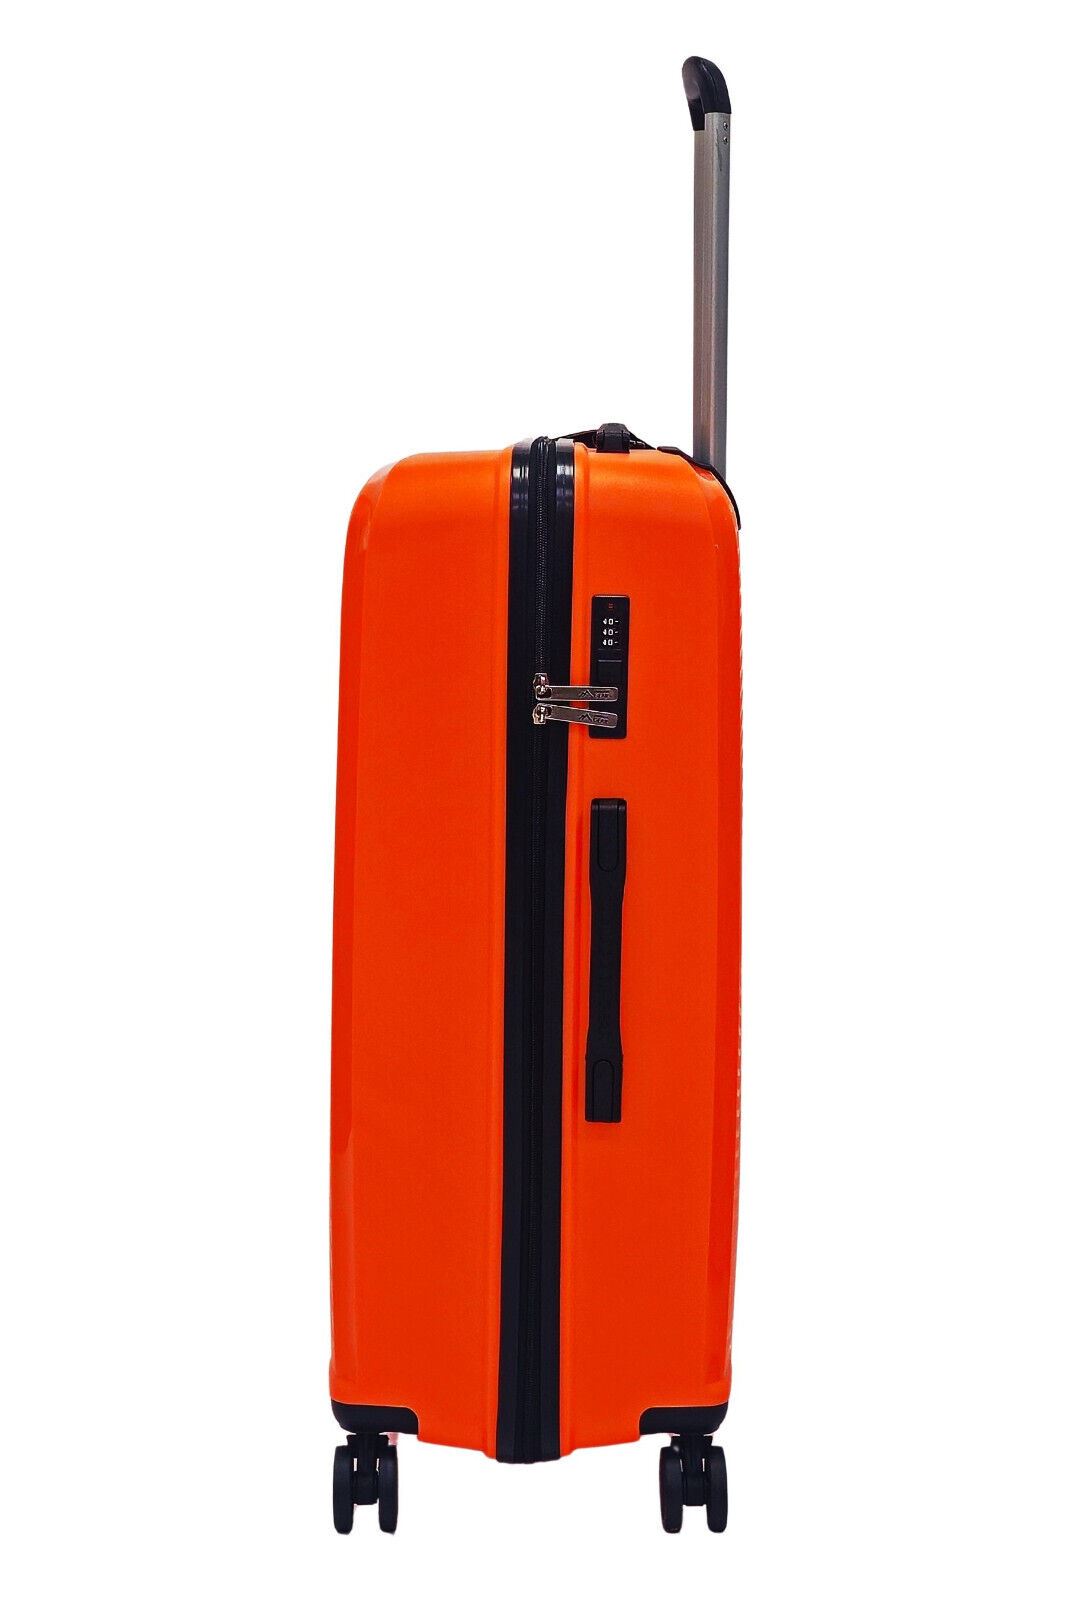 Abbeville Large Hard Shell Suitcase in Orange